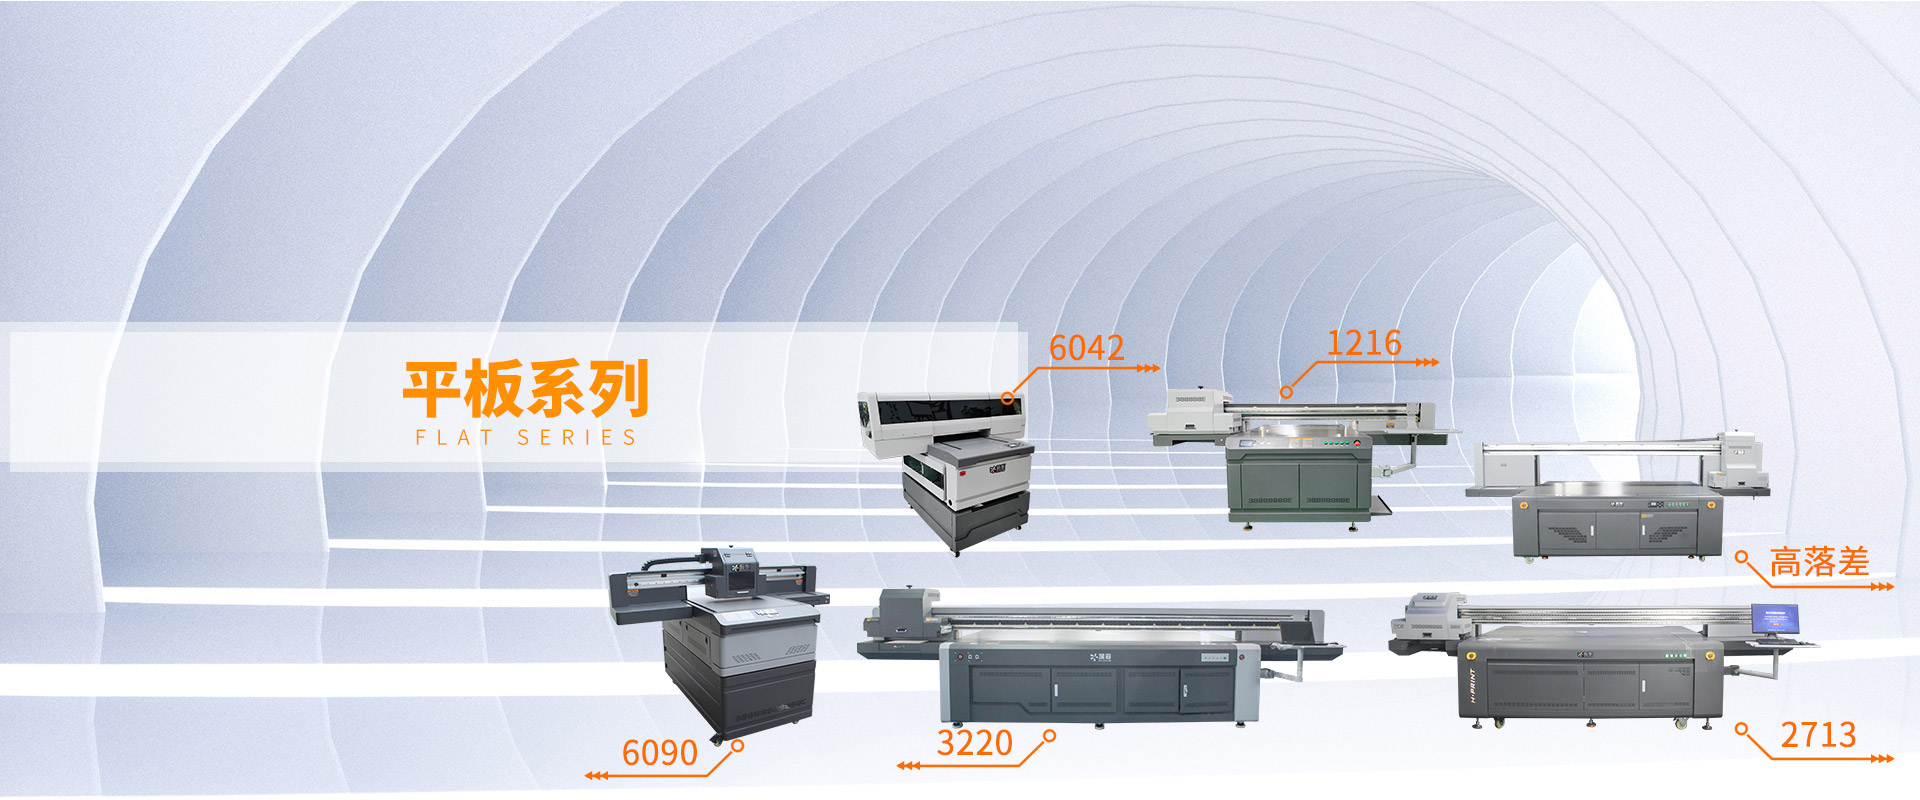 G5i喷头理光G6 uv平板打印机系列